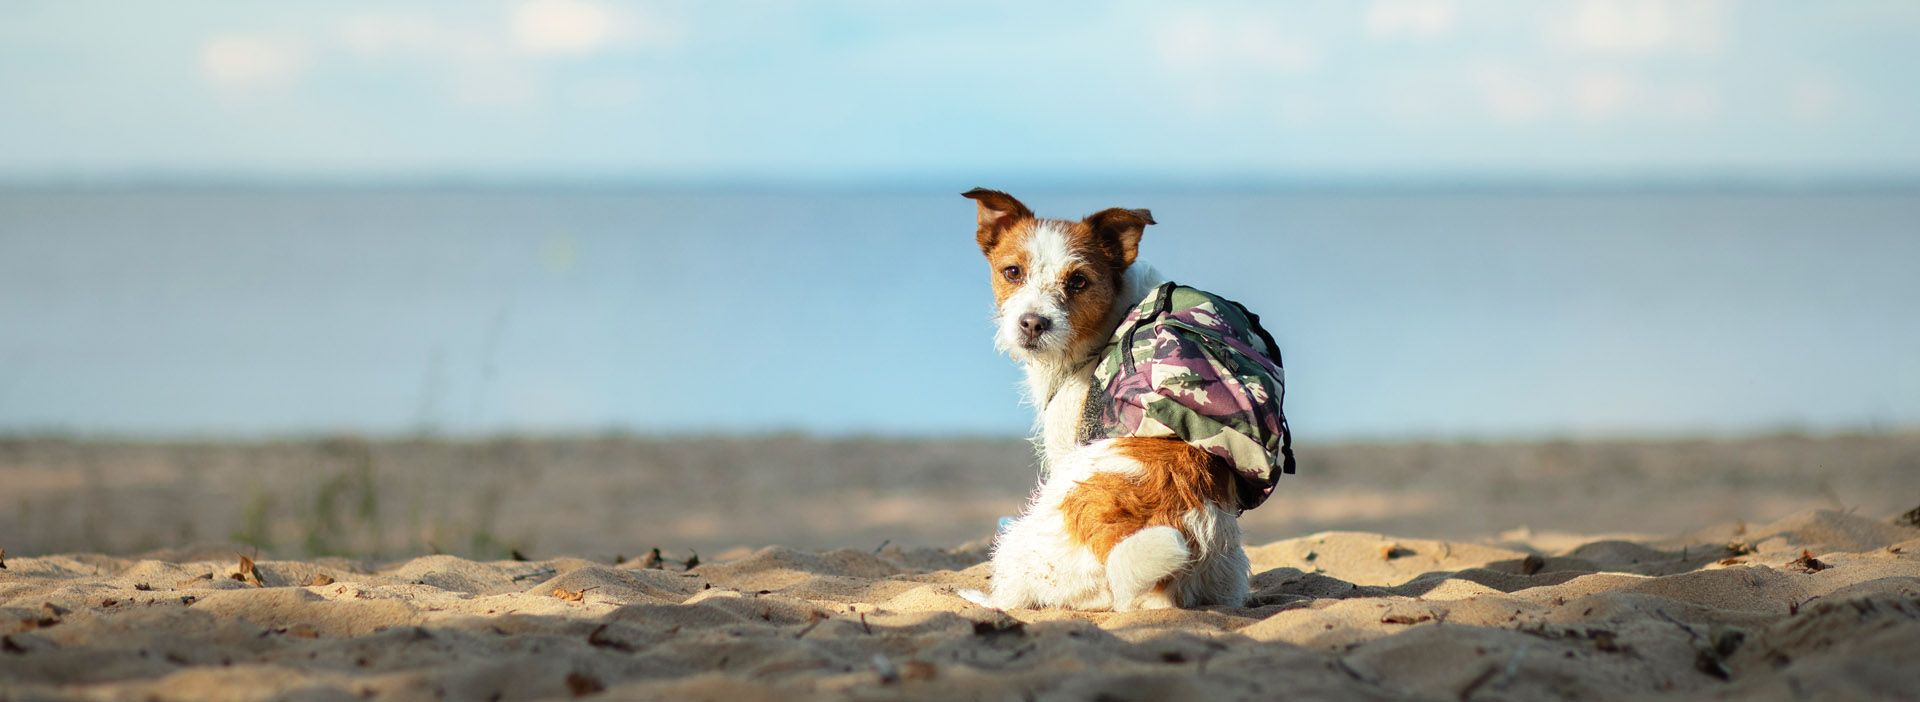 Hund mit Rucksack am Strand